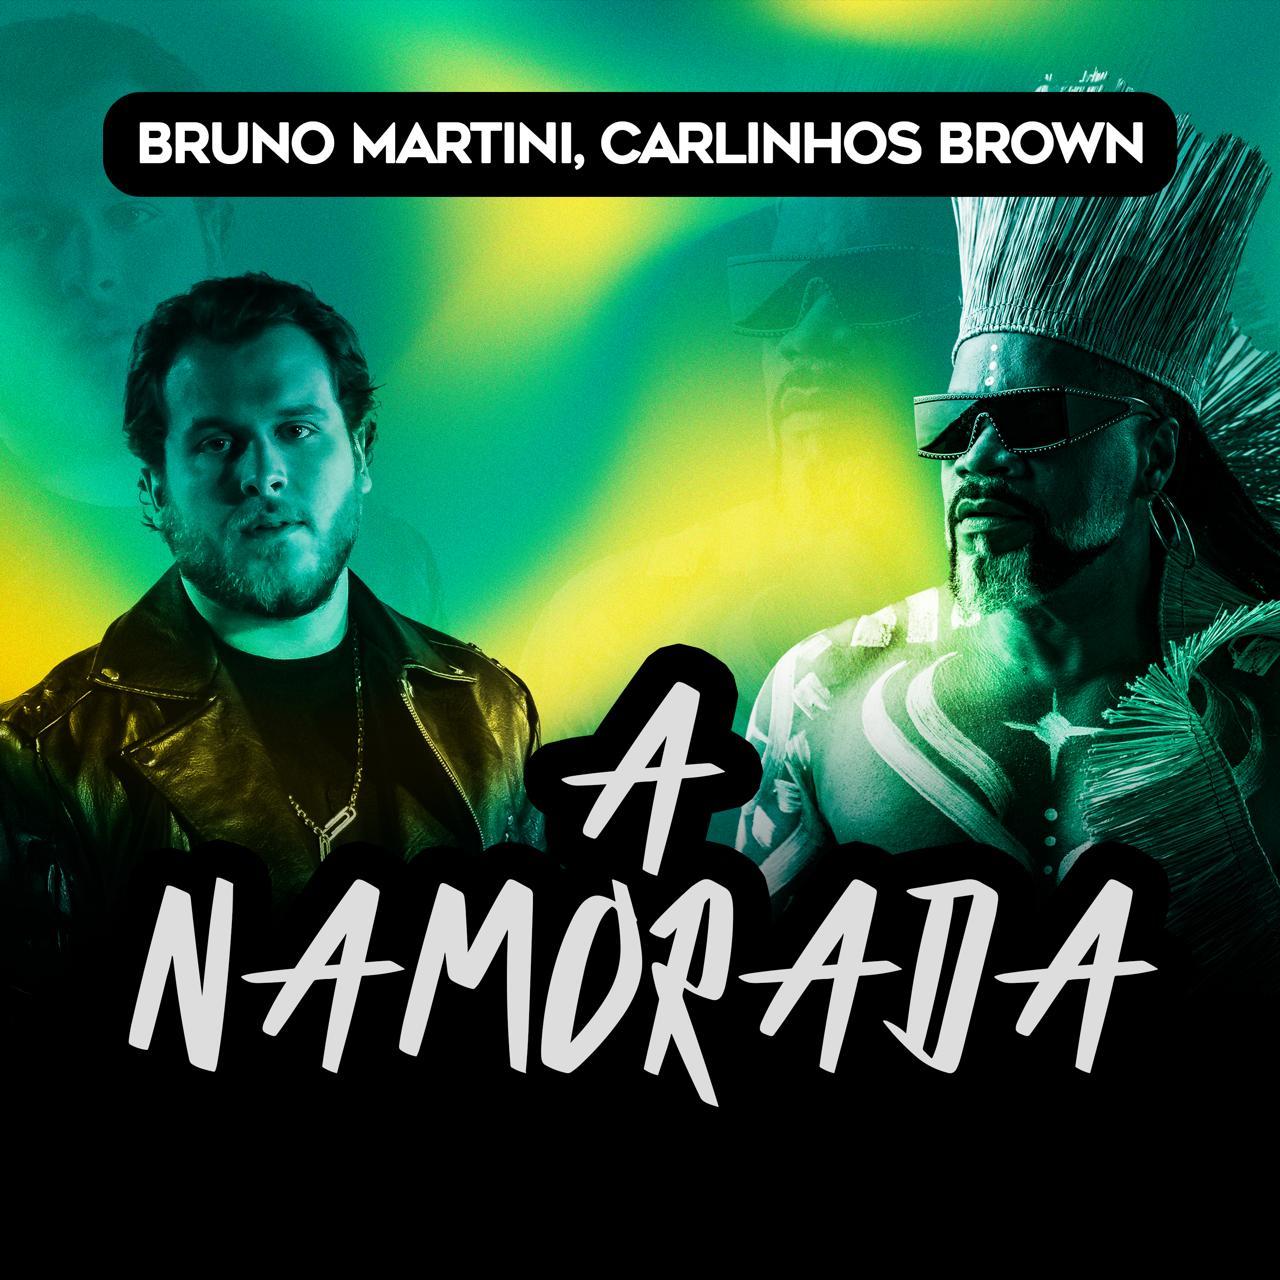 Bruno Martini e Carlinhos Brown revisitam “A Namorada”